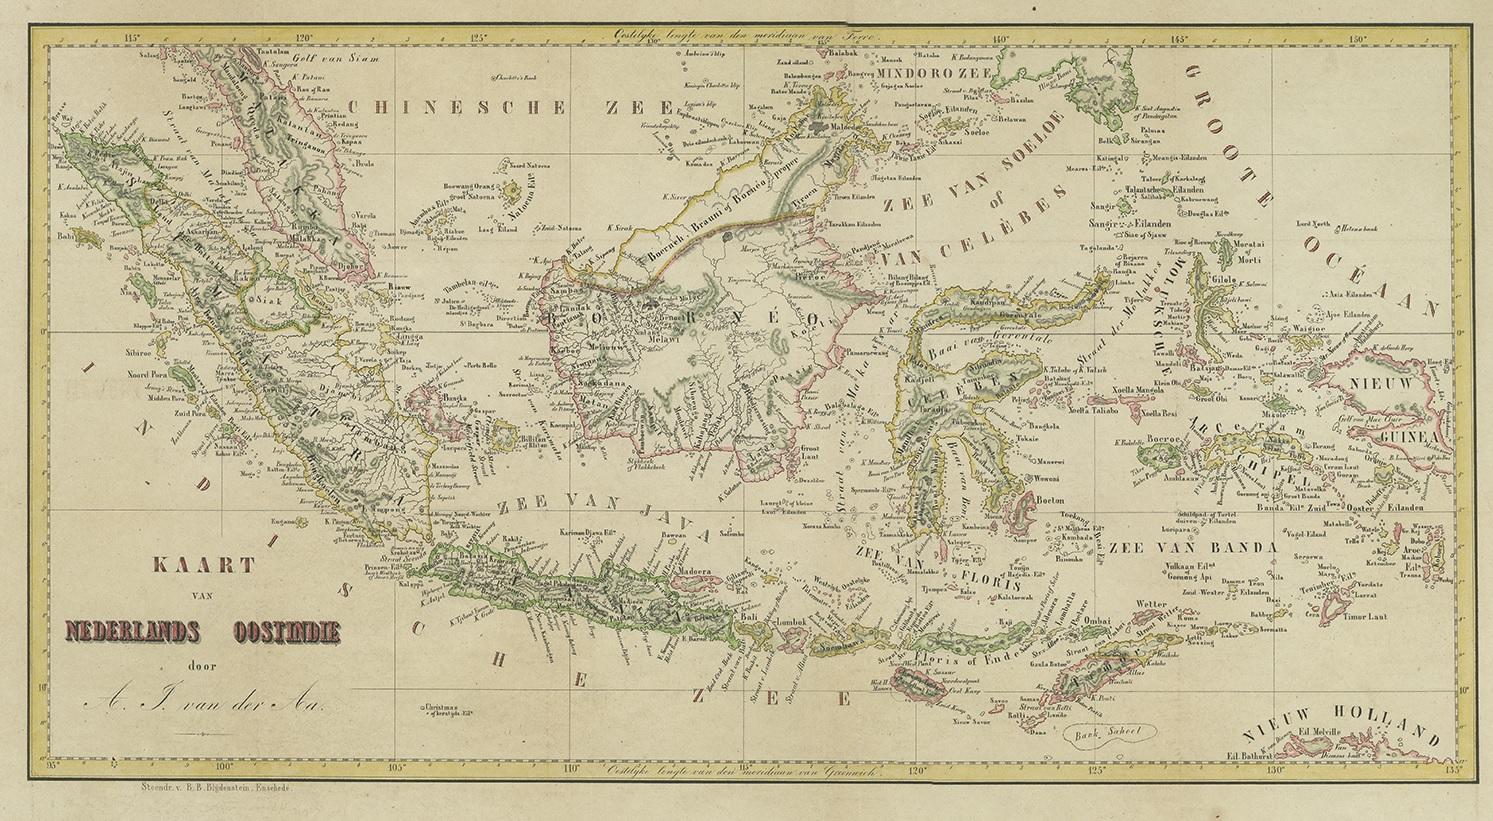 Antique map titled 'Kaart van Nederlands OostIndie door A.J. van der Aa'. Old map of the Dutch East Indies. This map originates from 'Nederlands Oost-Indië, of beschrijving der Nederlandsche bezittingen in Oost-Indië, voorafgegaan door een beknopt